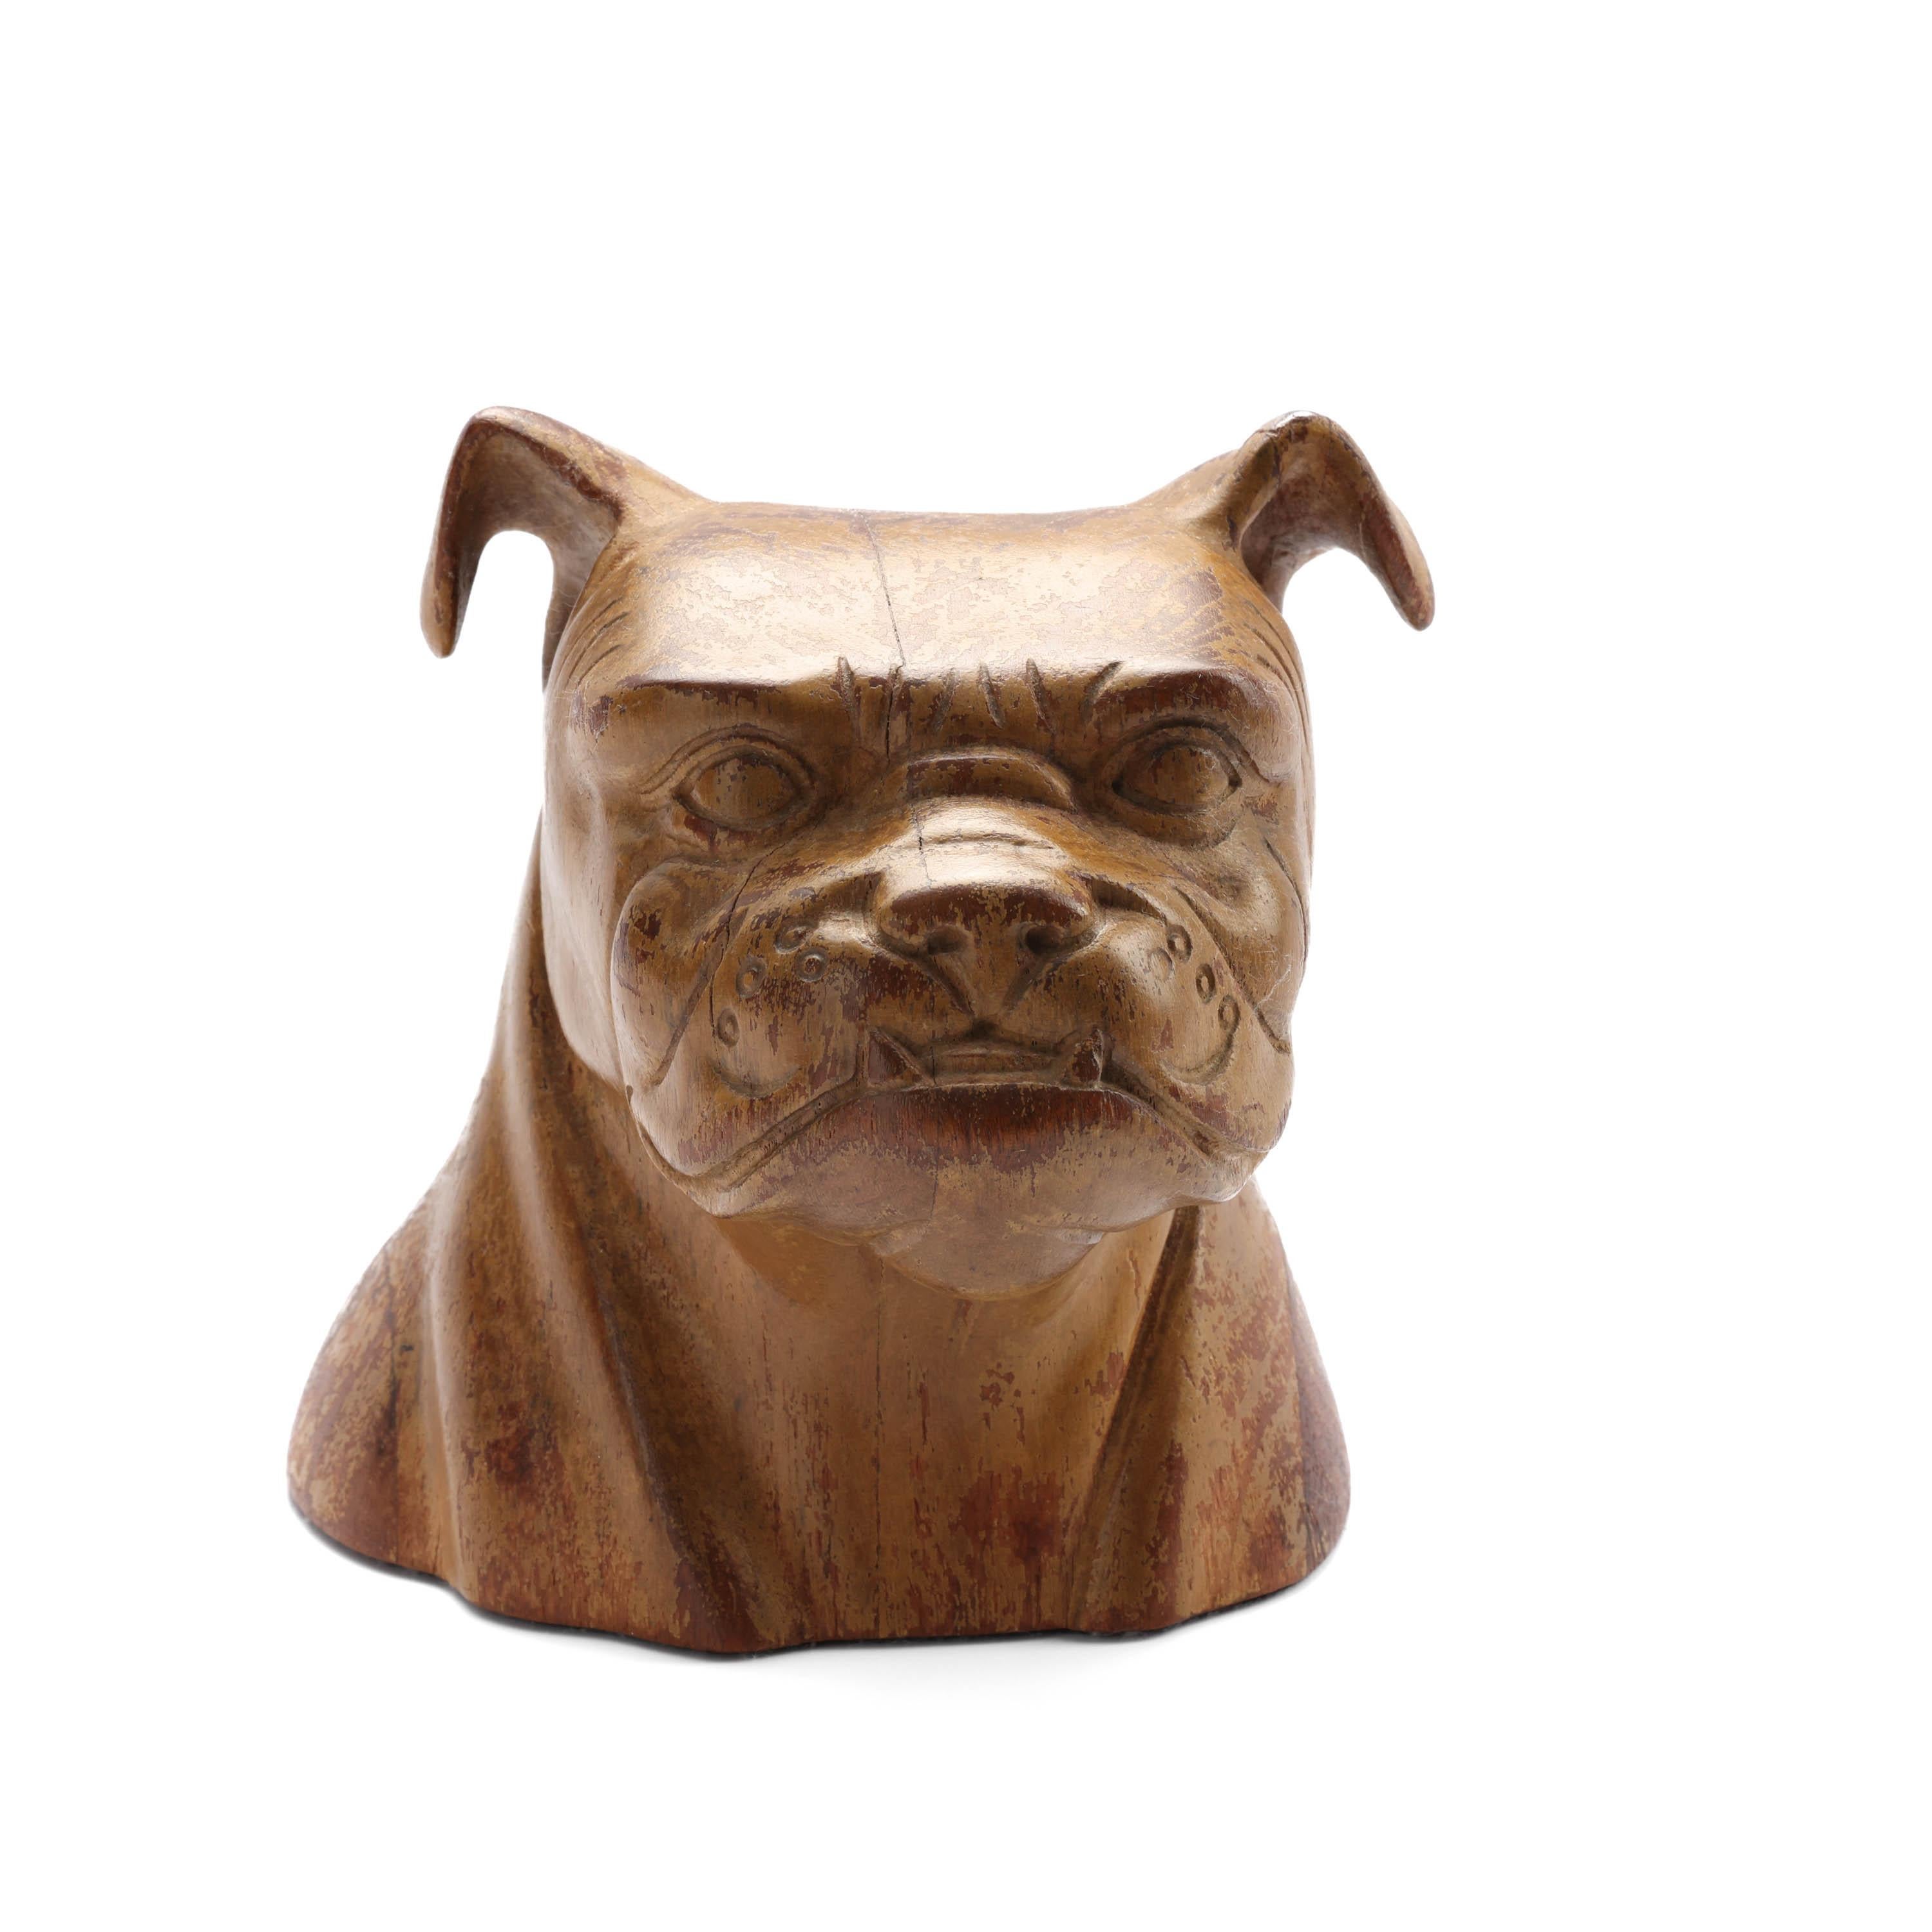 Skulpturen von Hunderassen gibt es in Hülle und Fülle. Aber handgeschnitzte Skulpturen einer Französischen Bulldogge, Englischen Bulldogge oder eines Boxers nicht so sehr. Dies ist ein seltener und schöner Fund.

Fein, fachmännisch und kunstvoll in